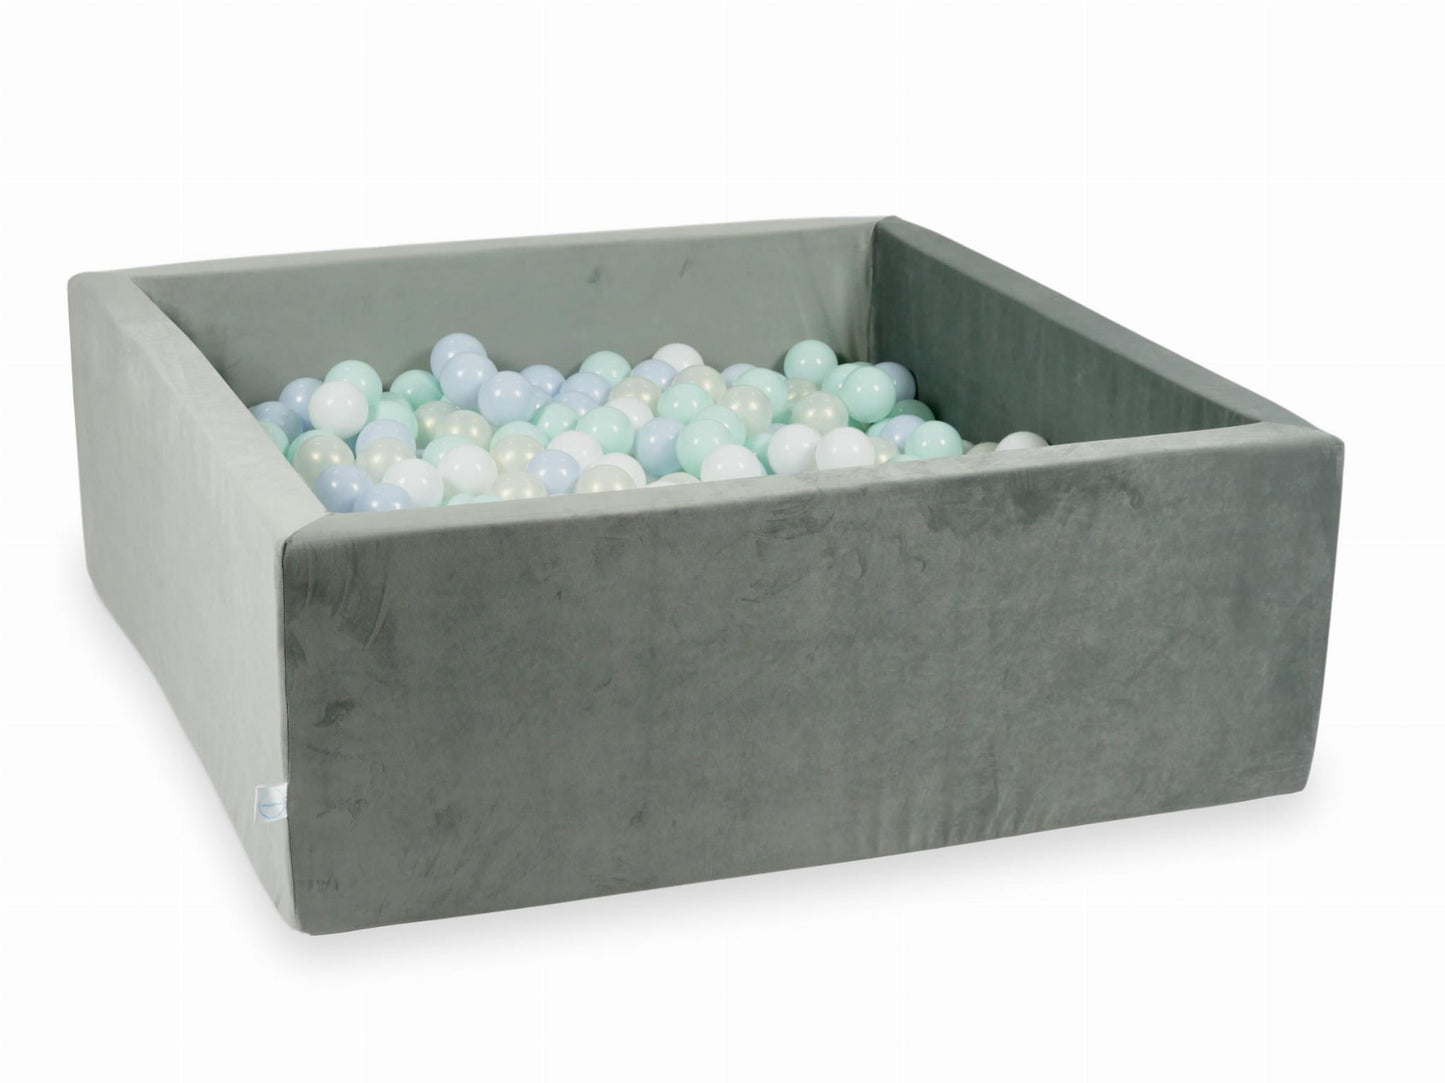 Piscine à Balles 110x110x40 Velvet gris avec balles 600 pcs (bleu perle claire, menthe clair, iridescent, blanc)